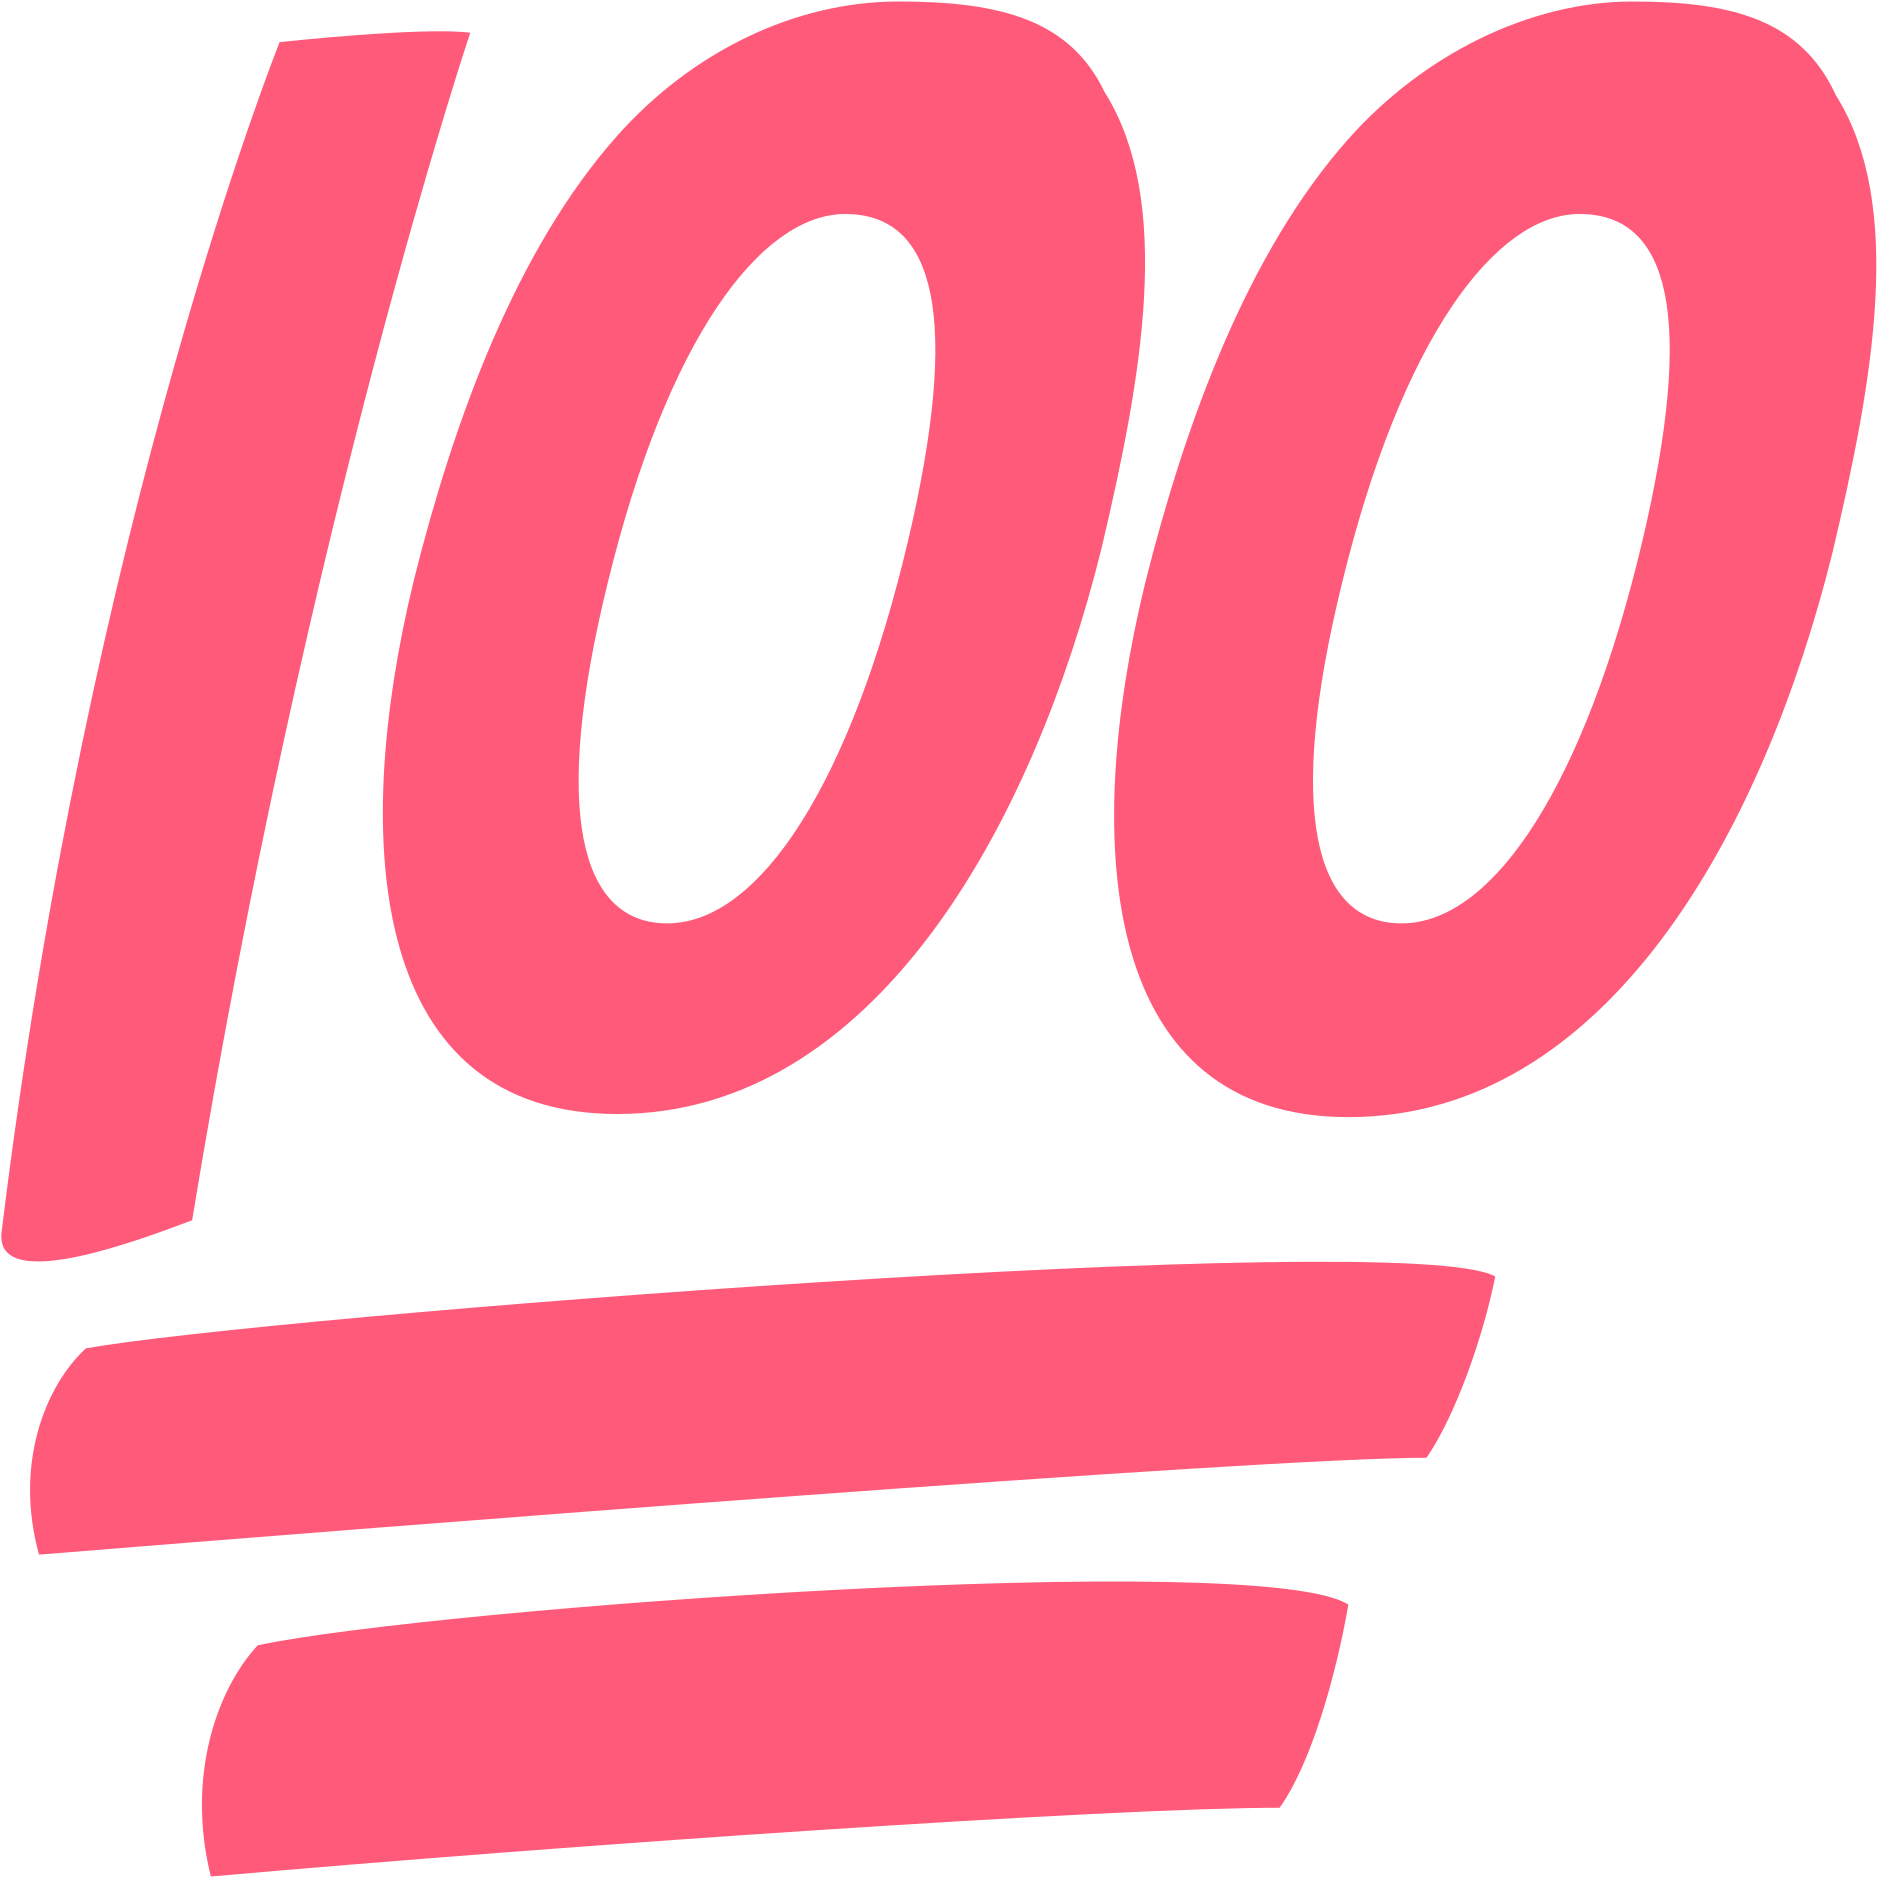 Free download Best 50 100 Percent Wallpaper On Hipwallpaper 100 Emoji 100 [1877x1877] for your Desktop, Mobile & Tablet. Explore Percent Wallpaper. Percent Wallpaper